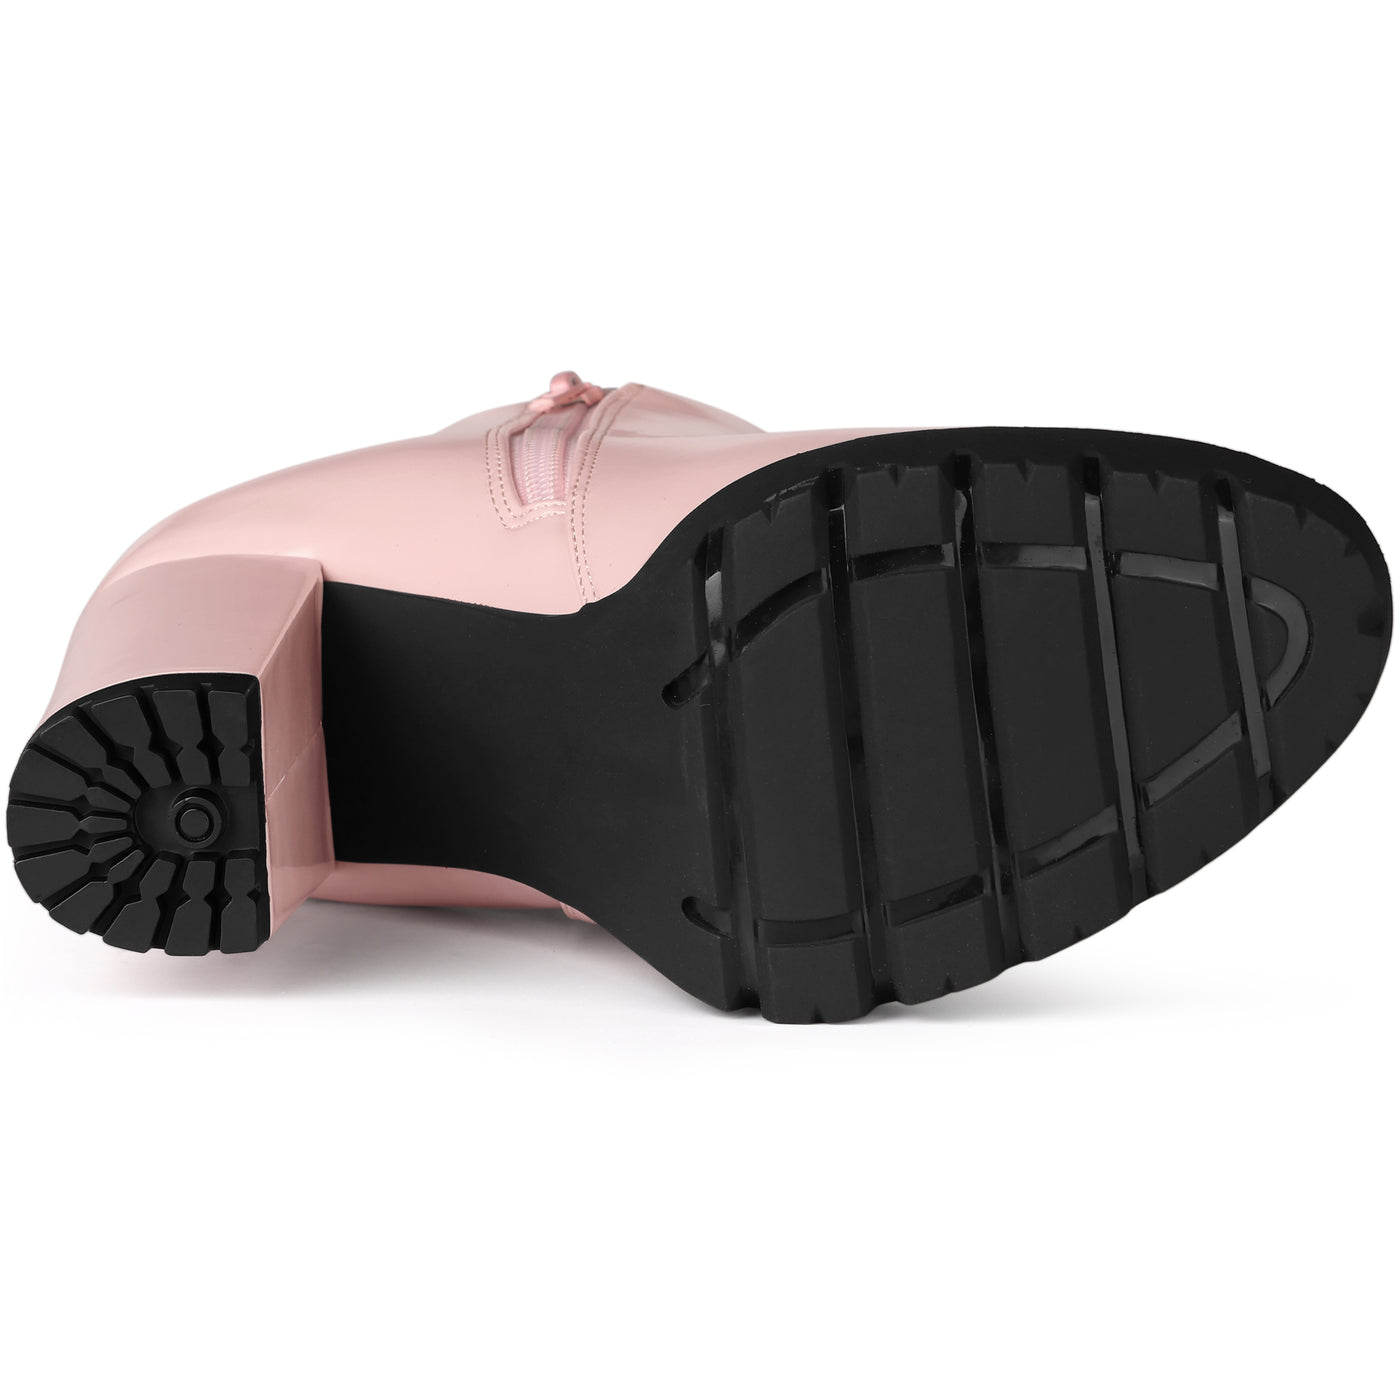 Allegra K Chunky High Heel Platform Zipper Chelsea Boots